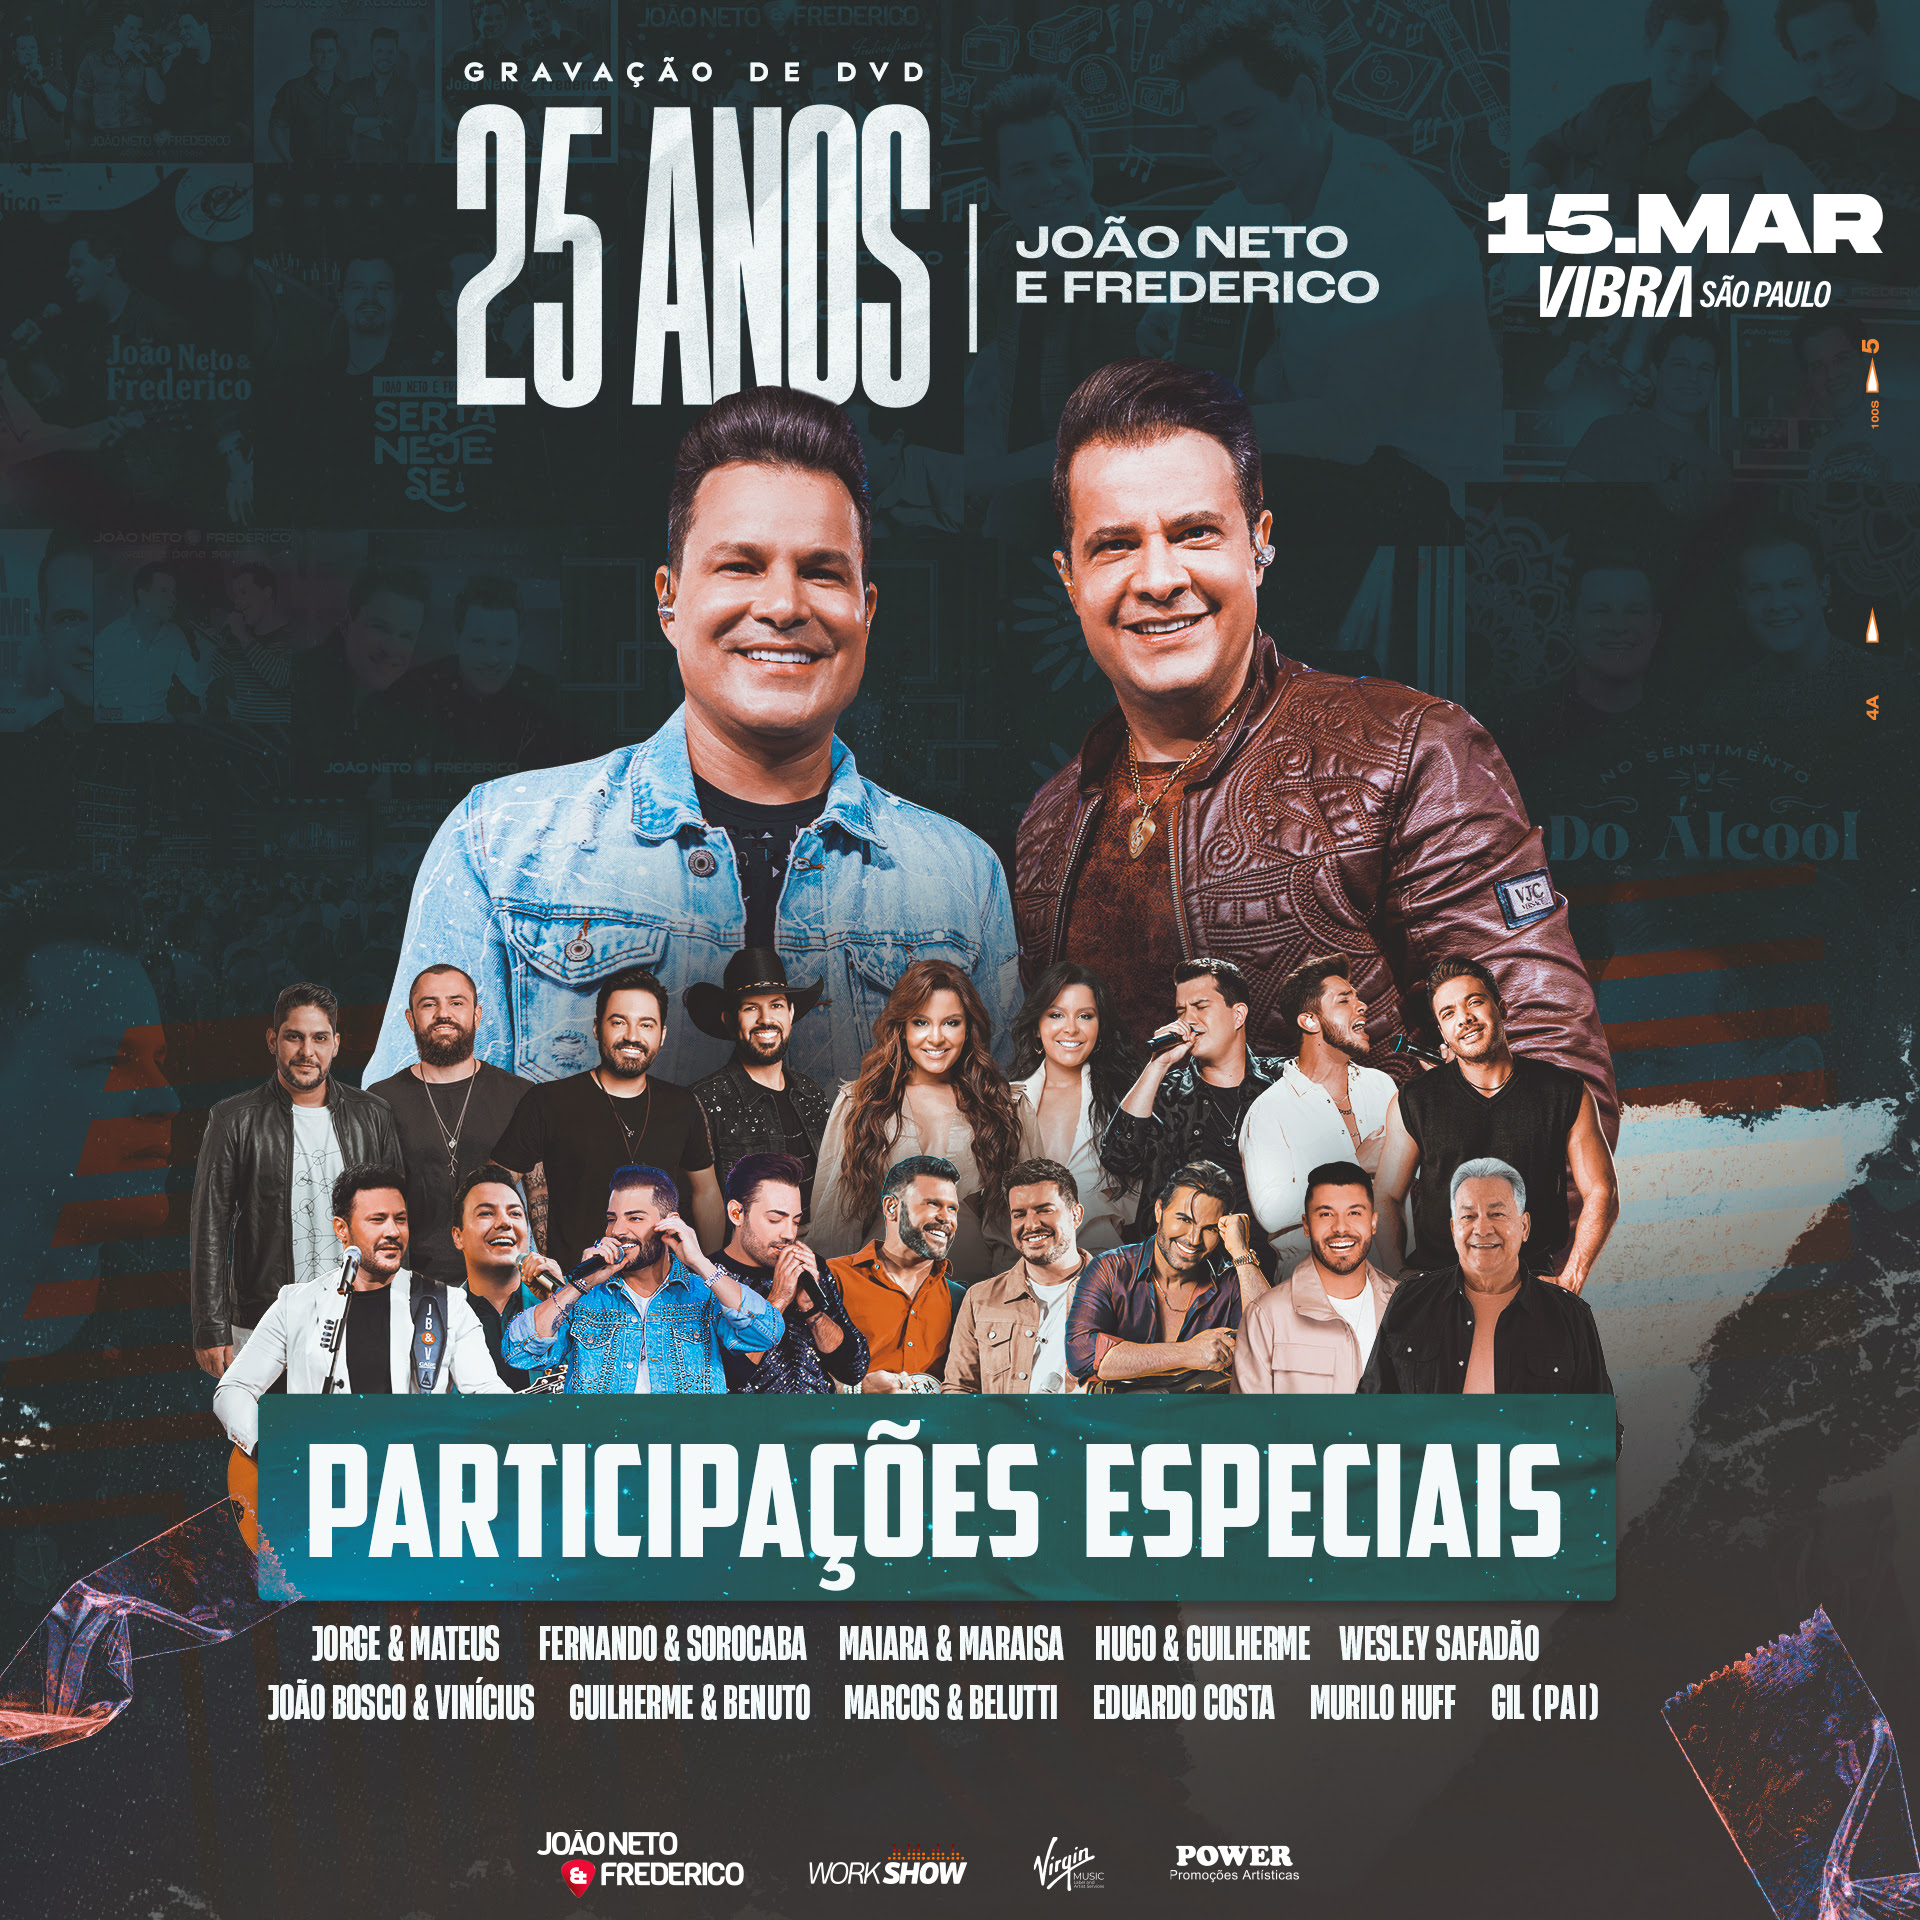 João Neto & Frederico comemoram 25 anos de carreira com gravação de DVD em São Paulo